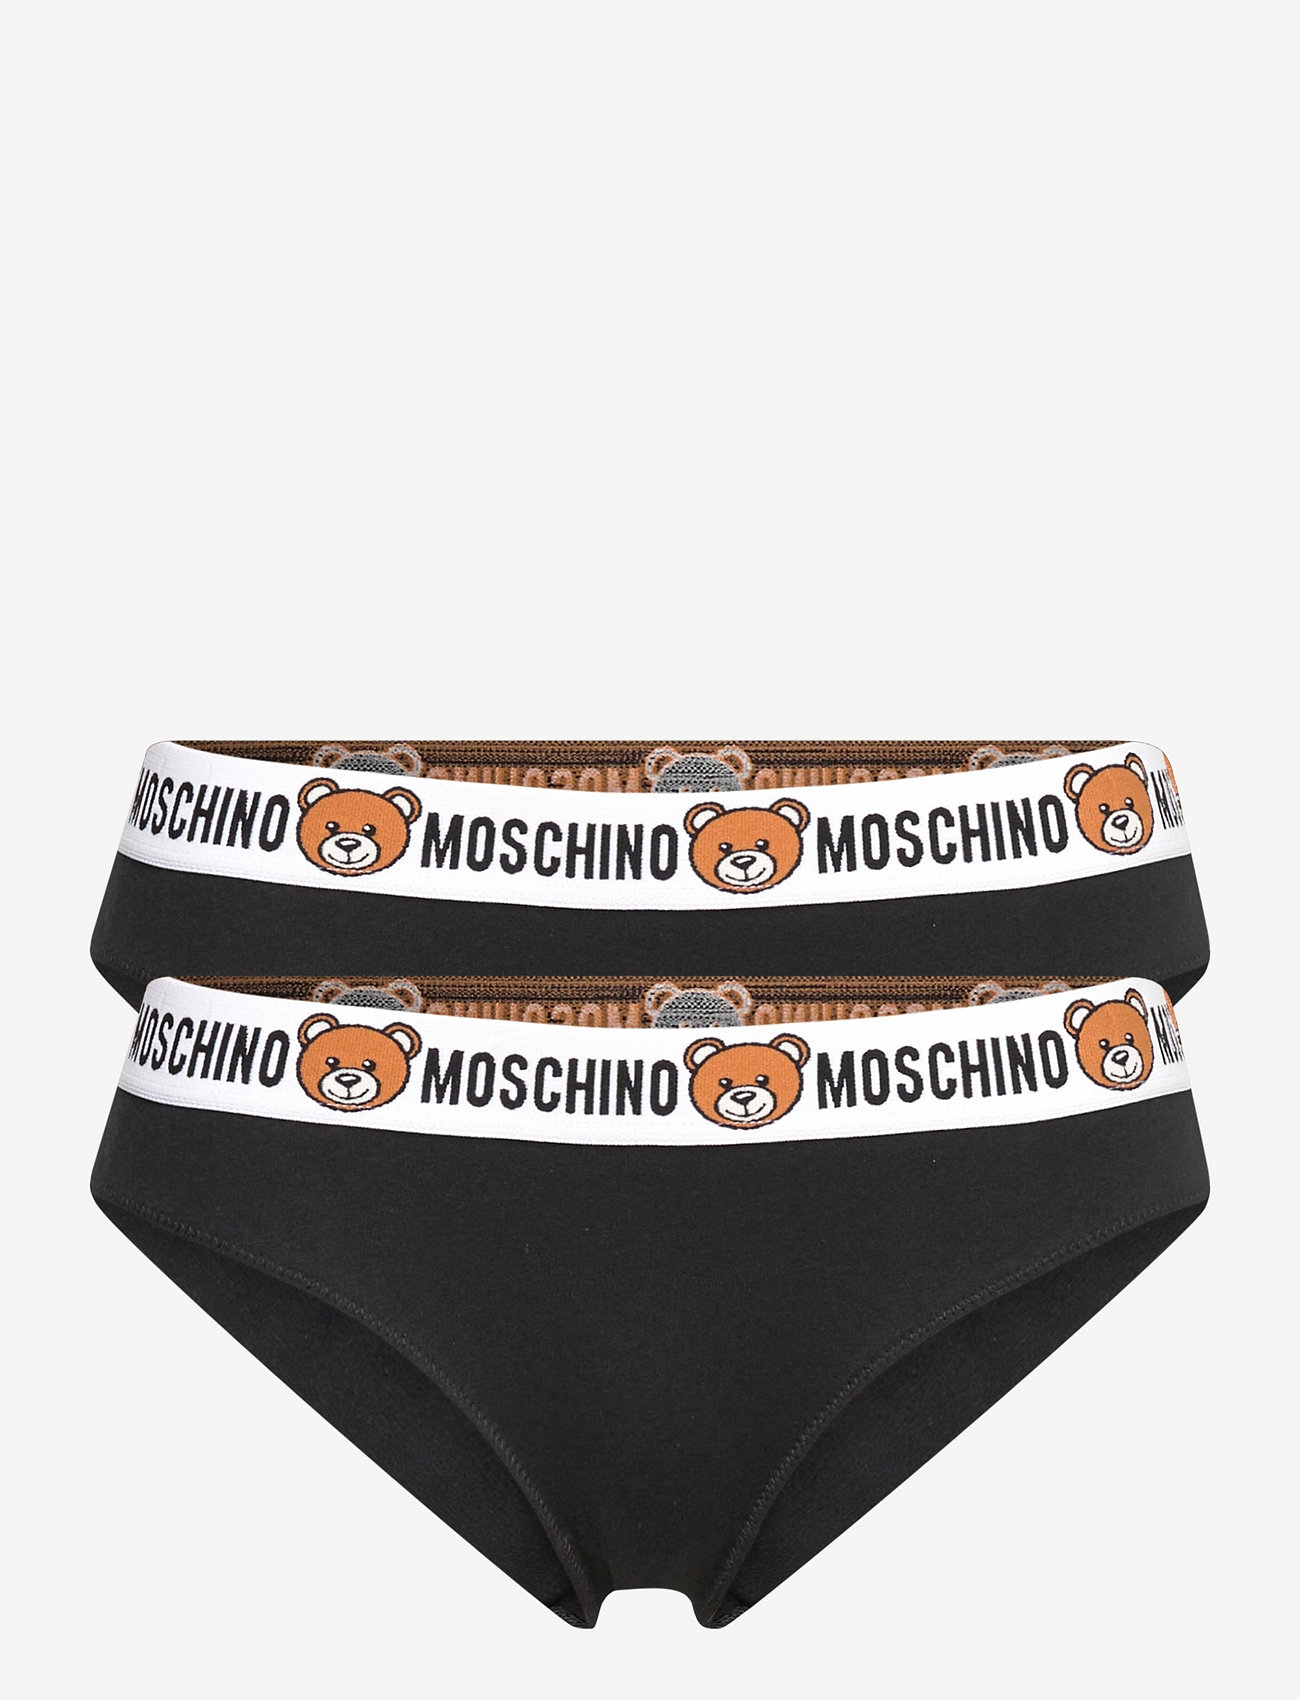 Moschino Underwear Brief - Briefs | Boozt.com